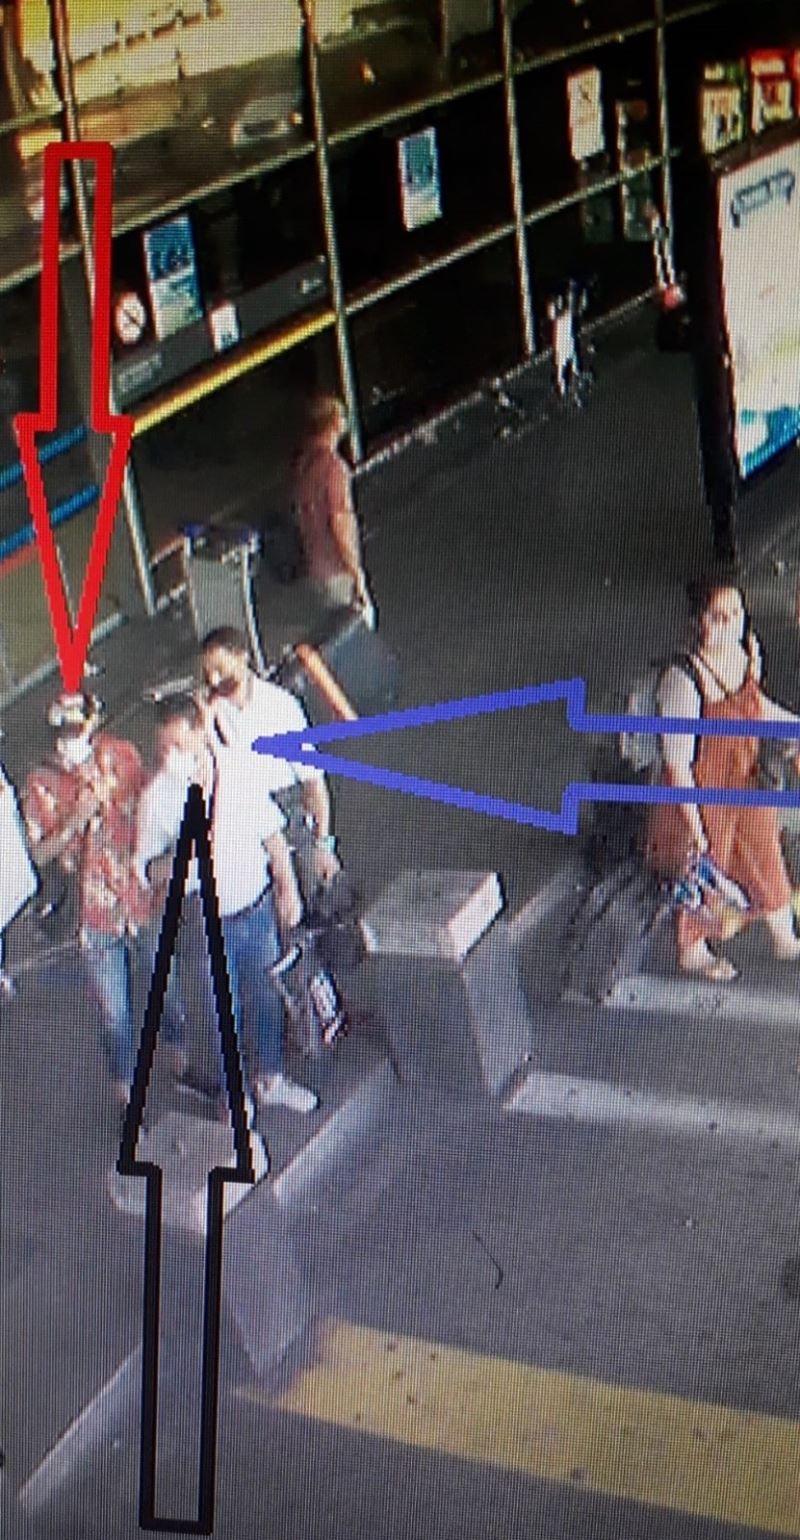 Sabiha Gökçen Havalimanında “perdeleme” yöntemiyle hırsızlık kamerada